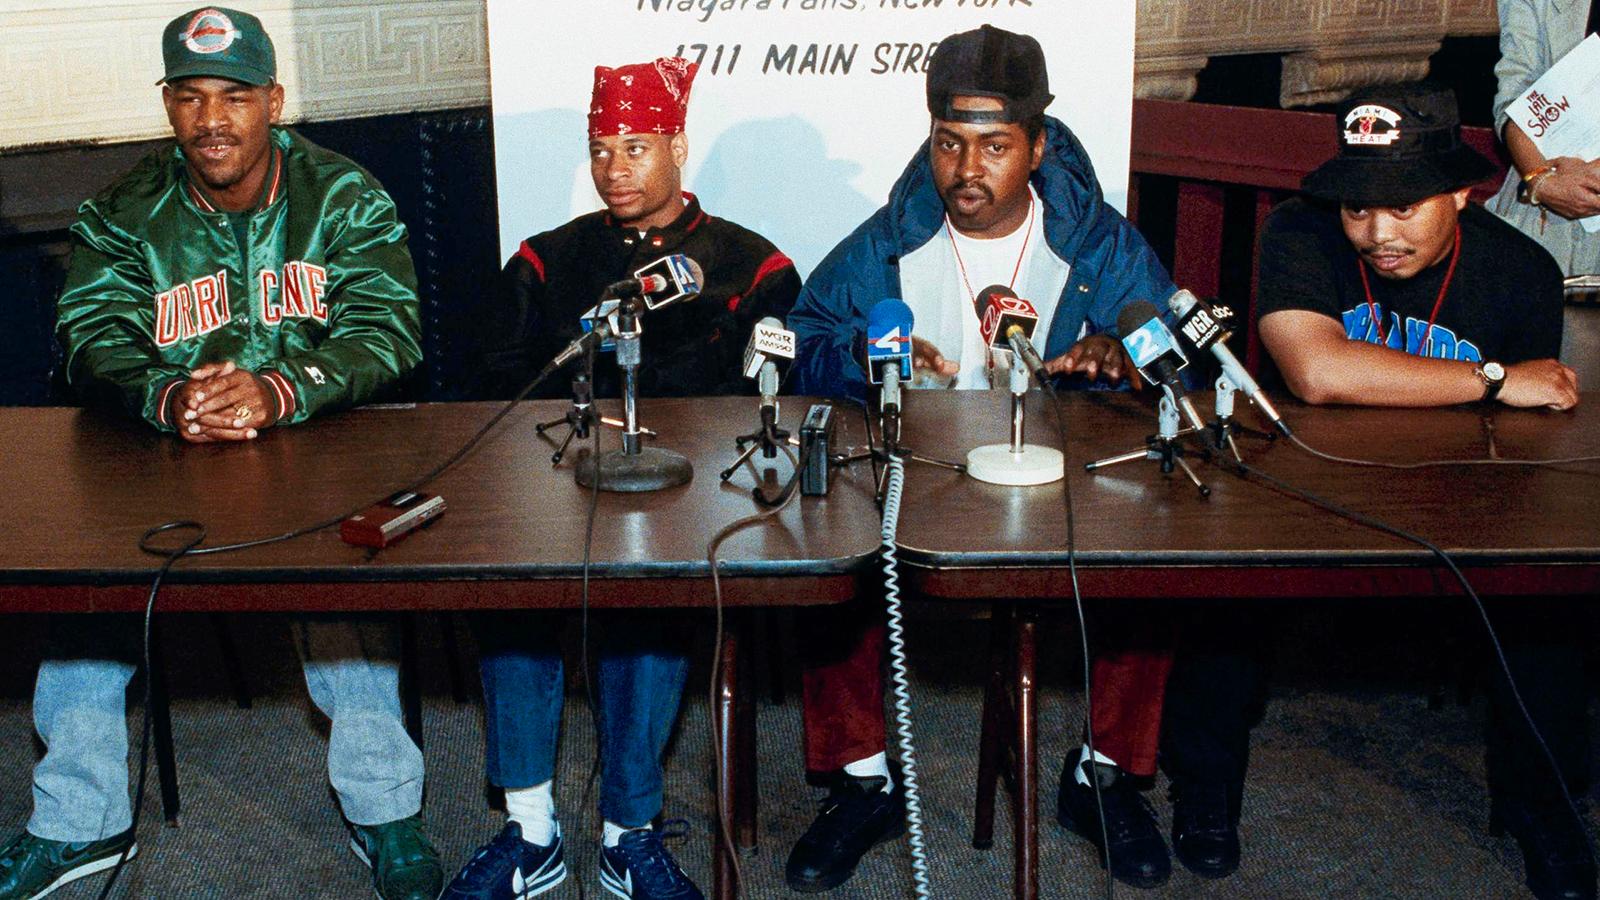 Hiphopgruppen 2 Live Crews medlem Fresh Kid Ice (längst till höger) har gått bort. 